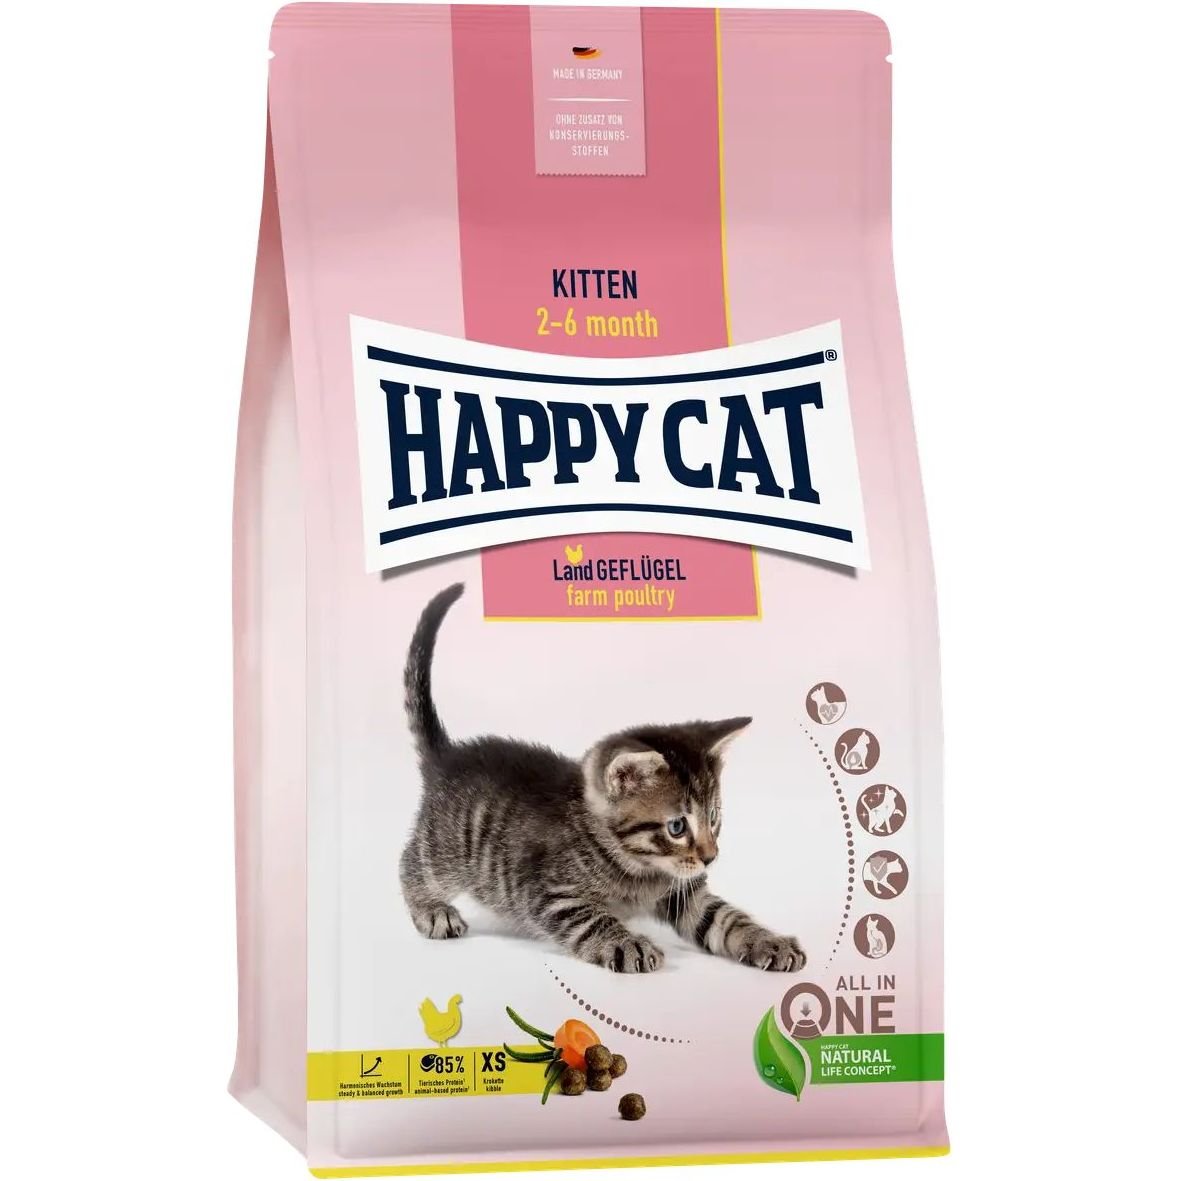 Сухой корм для котят Happy Cat Kitten Land Geflügel, со вкусом птицы, 300 г - фото 1